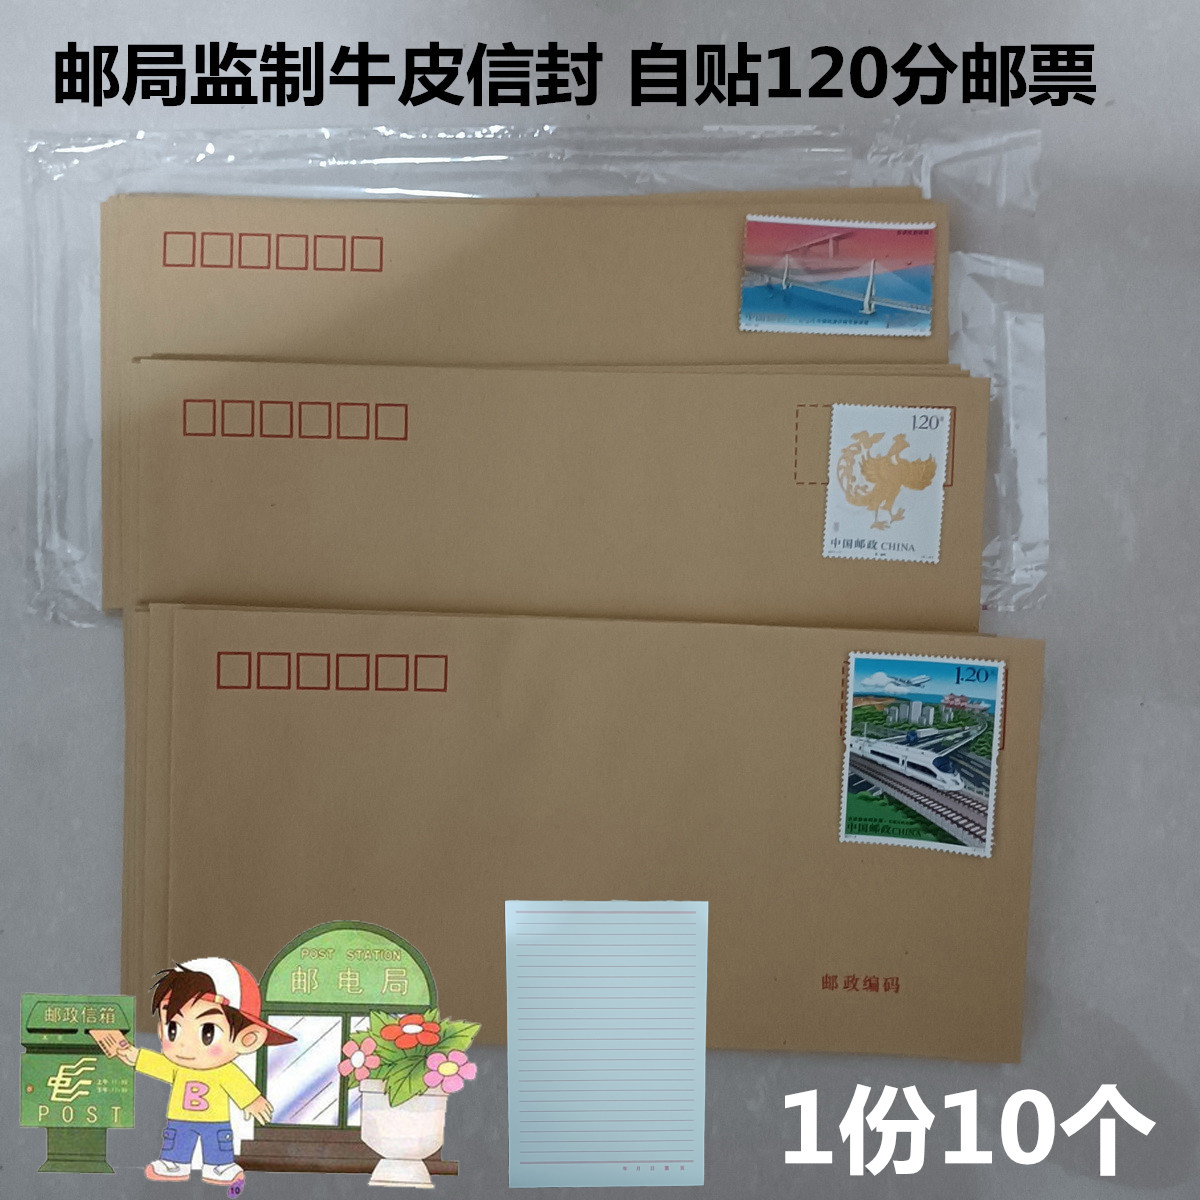 10个邮局监制得力牛皮信封带邮票1.2元可邮寄信封含信纸邮局标准